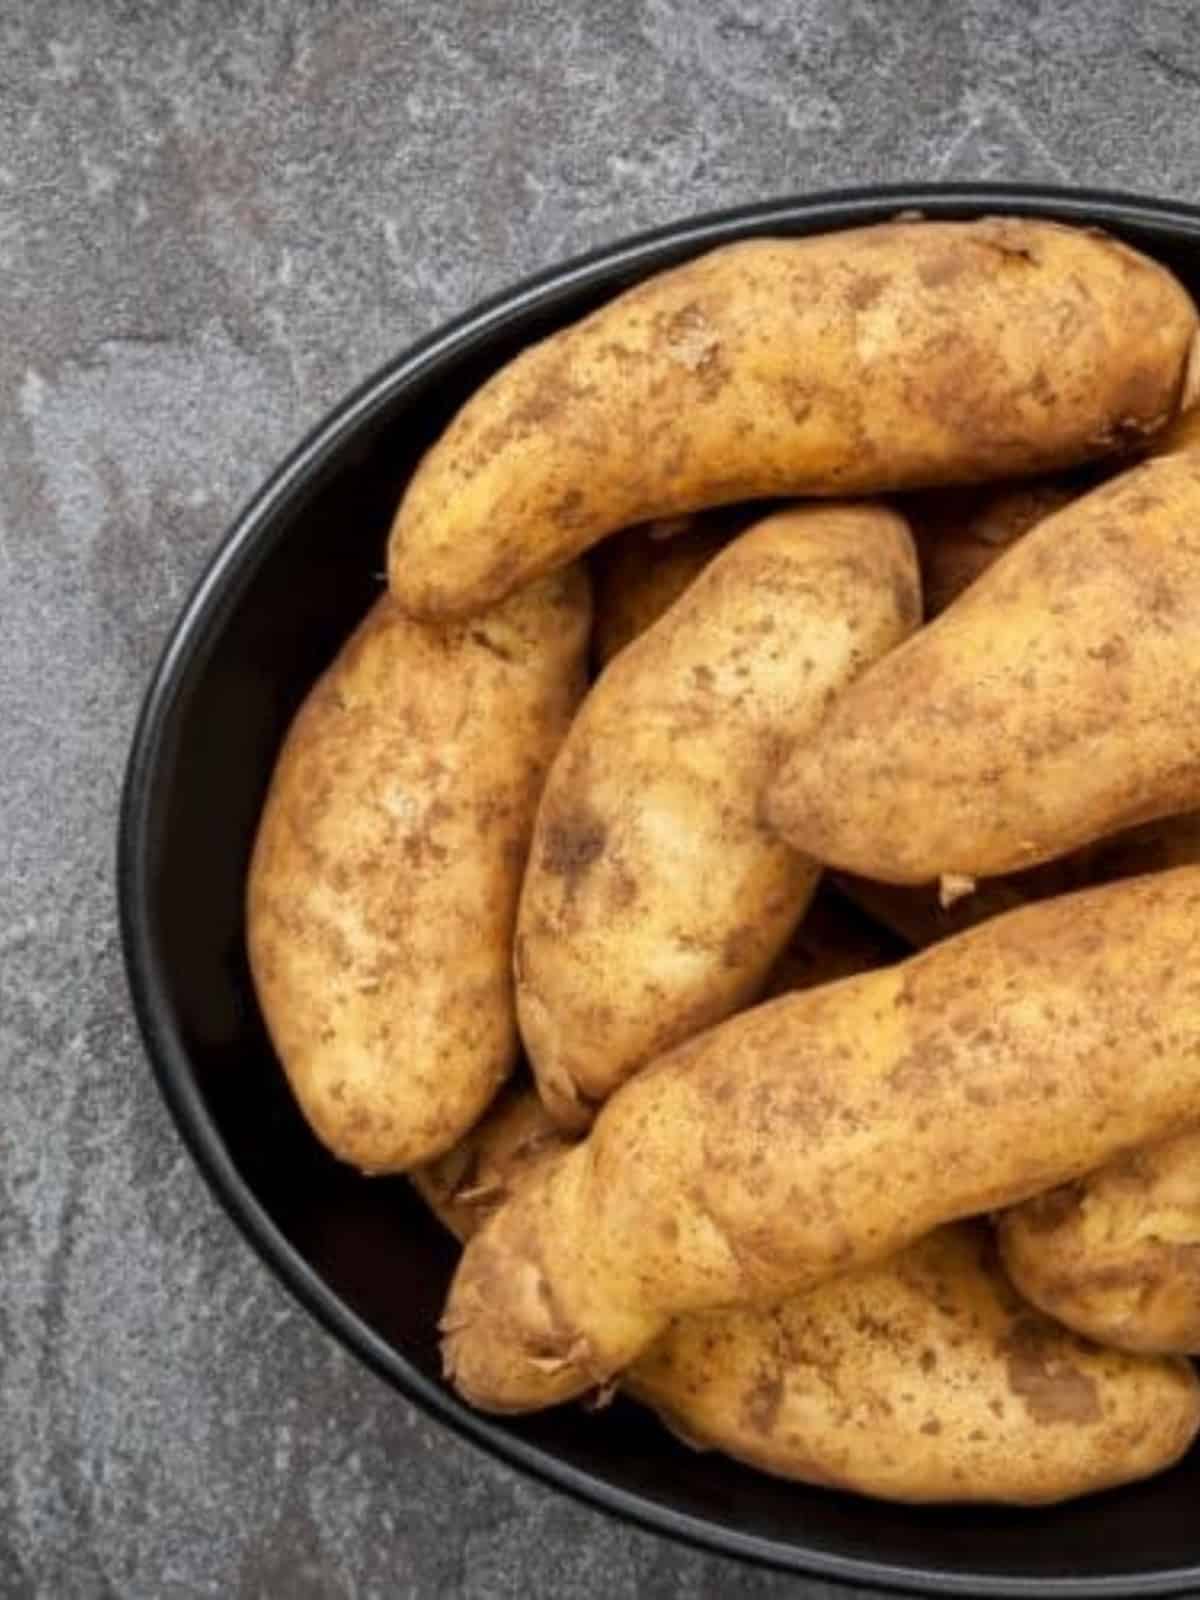 kipfler potatoes in black bowl